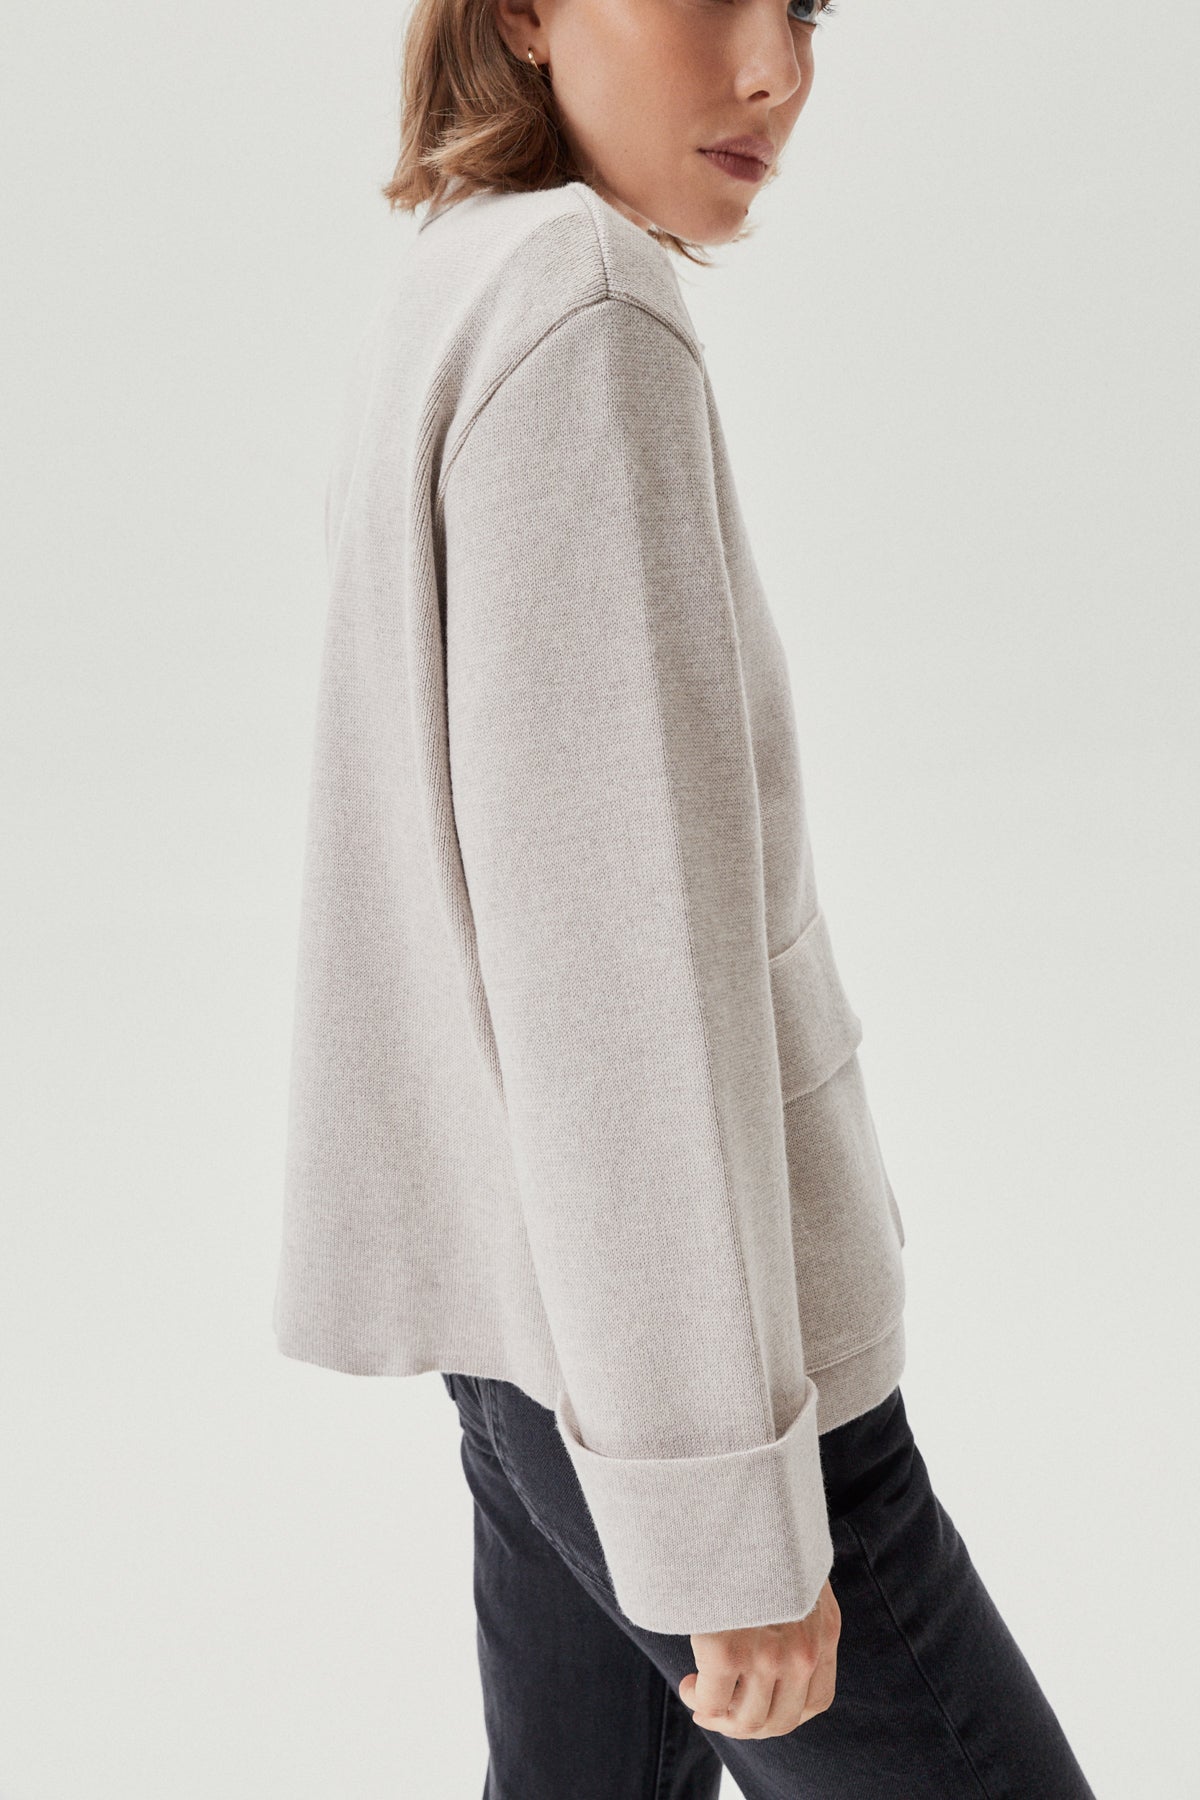 Greige | The Merino Wool Jacket